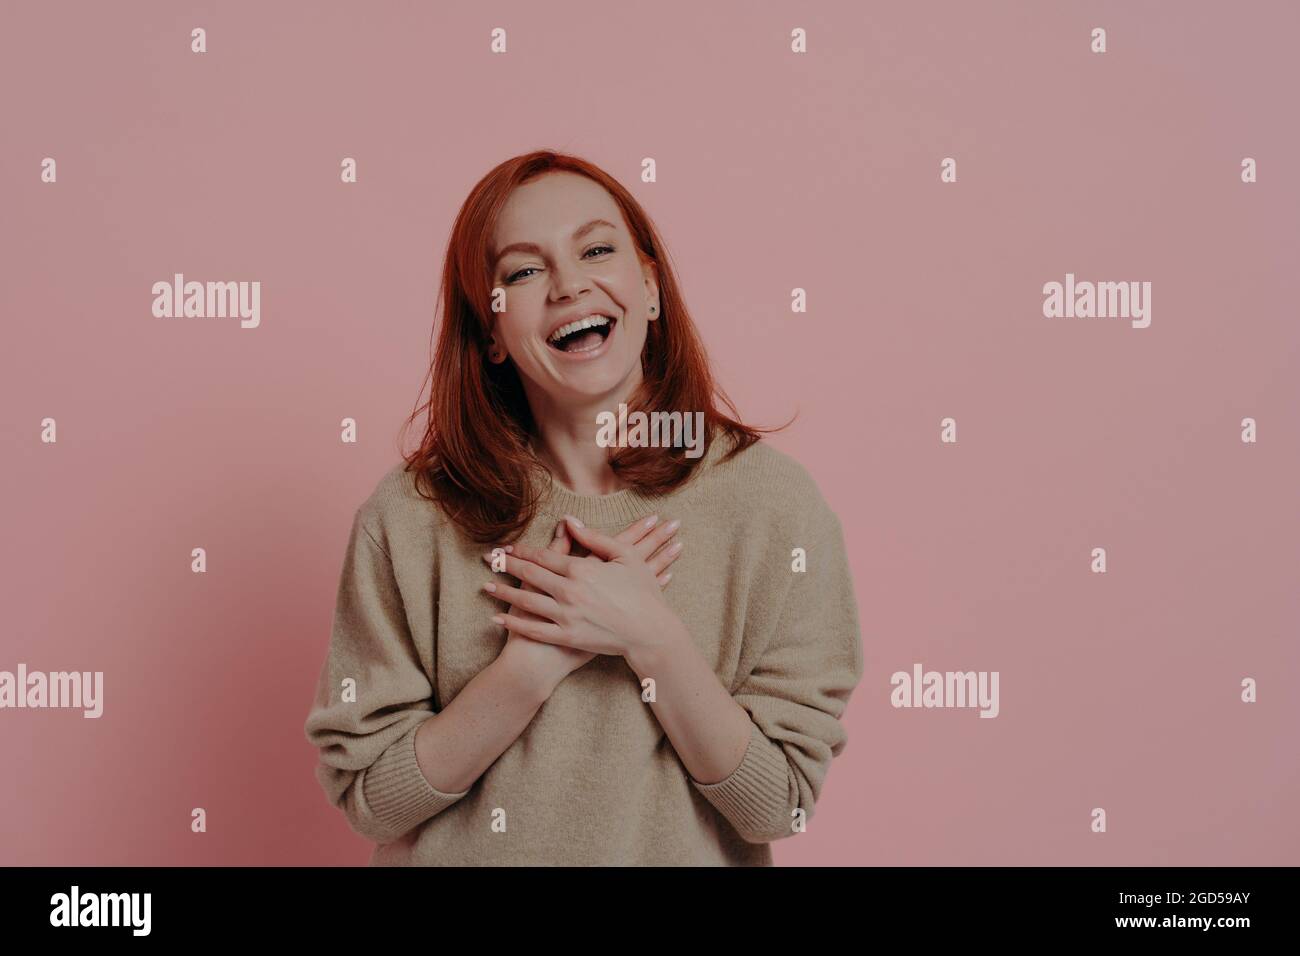 Felice donna divertente con capelli rossi ridendo forte isolato su sfondo rosa Foto Stock